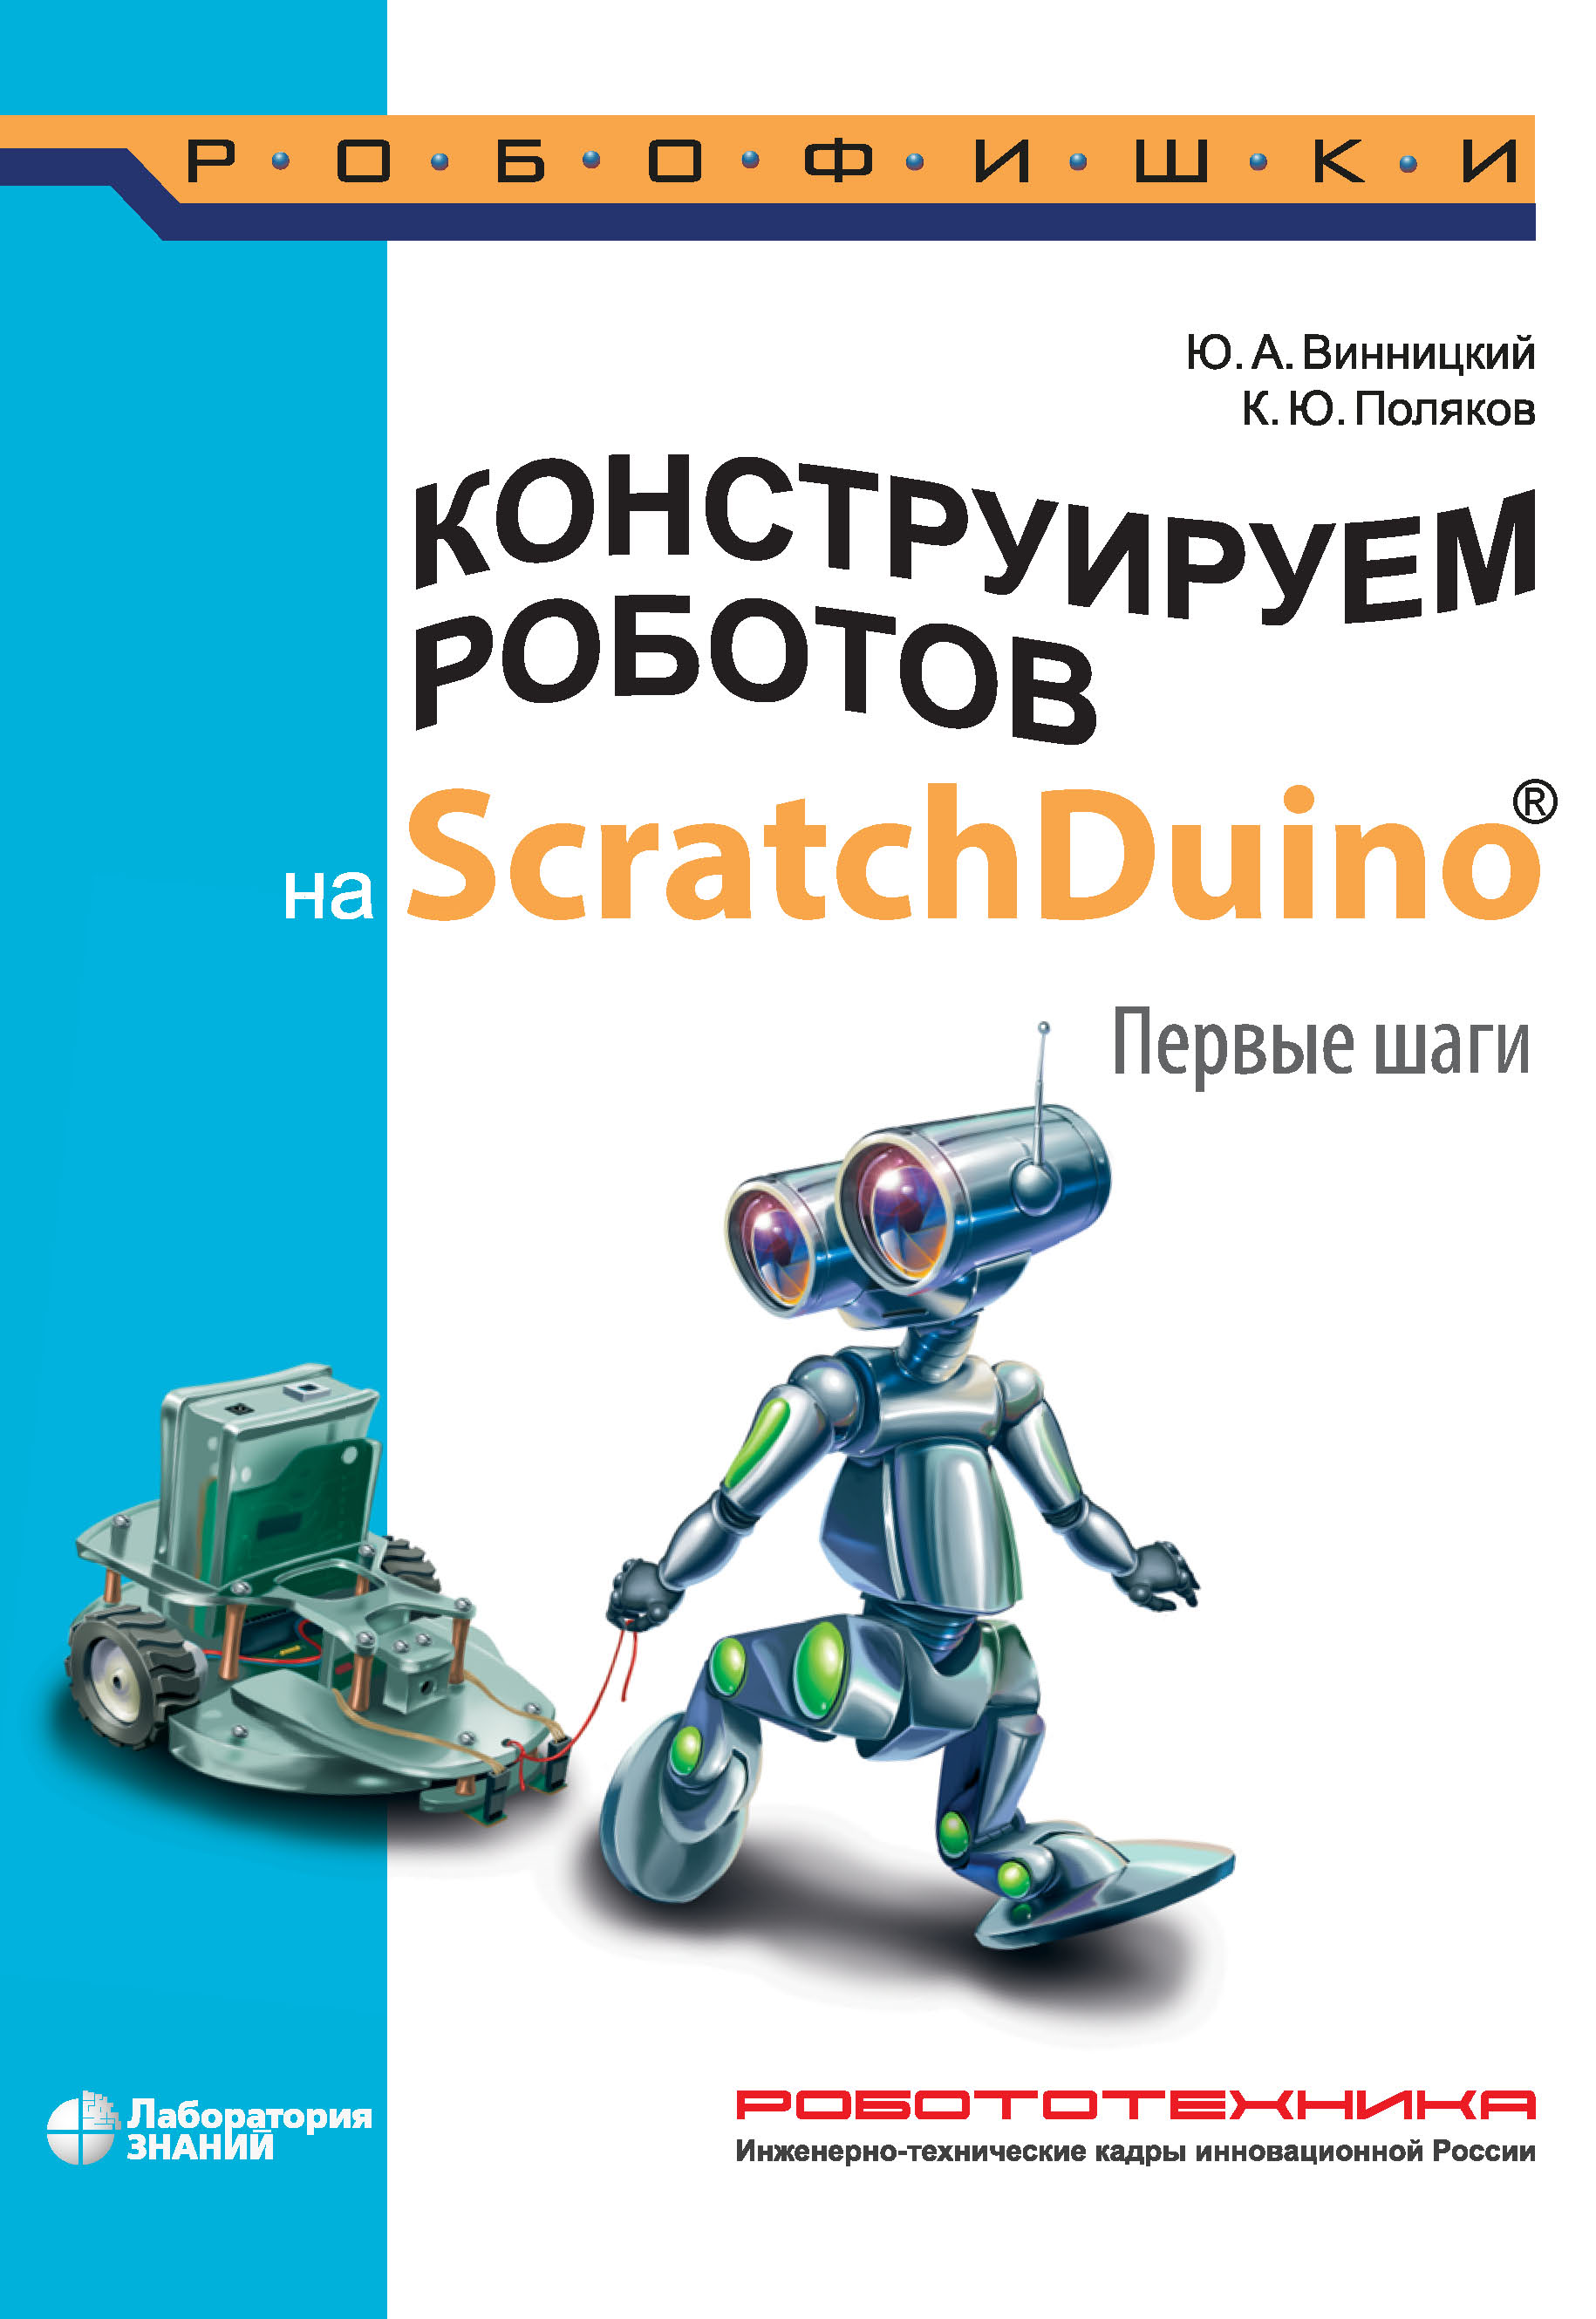 Книга Робофишки Конструируем роботов на ScratchDuino. Первые шаги созданная К. Ю. Поляков, Ю. А. Винницкий может относится к жанру автоматика и телемеханика, кибернетика, программирование, руководства, электроника. Стоимость электронной книги Конструируем роботов на ScratchDuino. Первые шаги с идентификатором 21630328 составляет 280.00 руб.